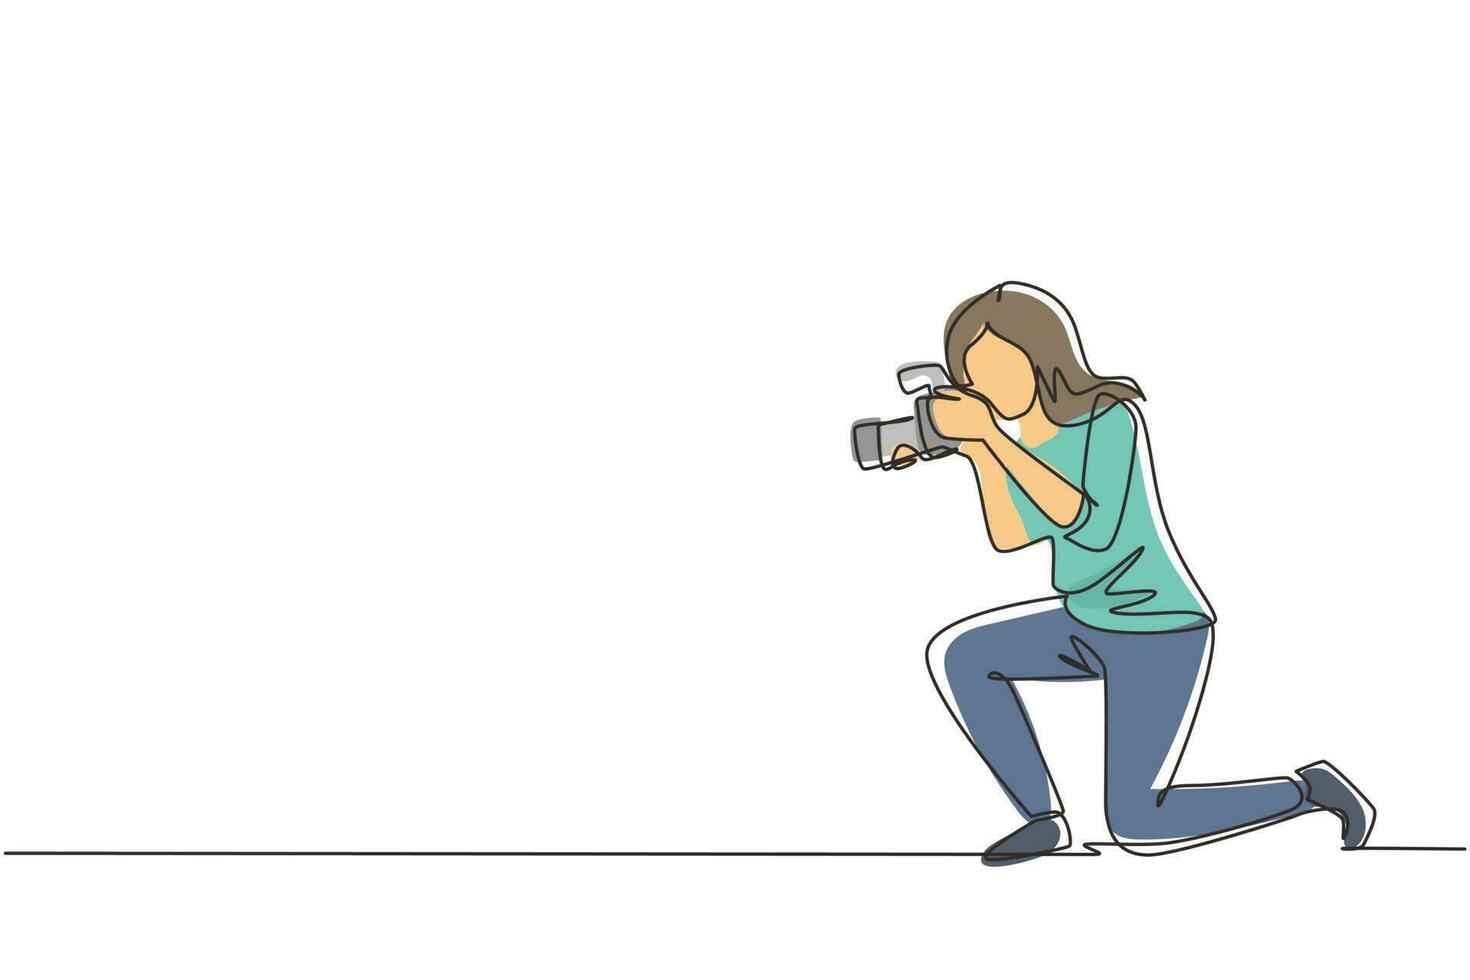 mujer fotógrafa de dibujo de una sola línea tomando fotos. equipo fotográfico para periodista. cámara digital con alta resolución. Estudio fotográfico. ilustración de vector de diseño de dibujo de línea continua